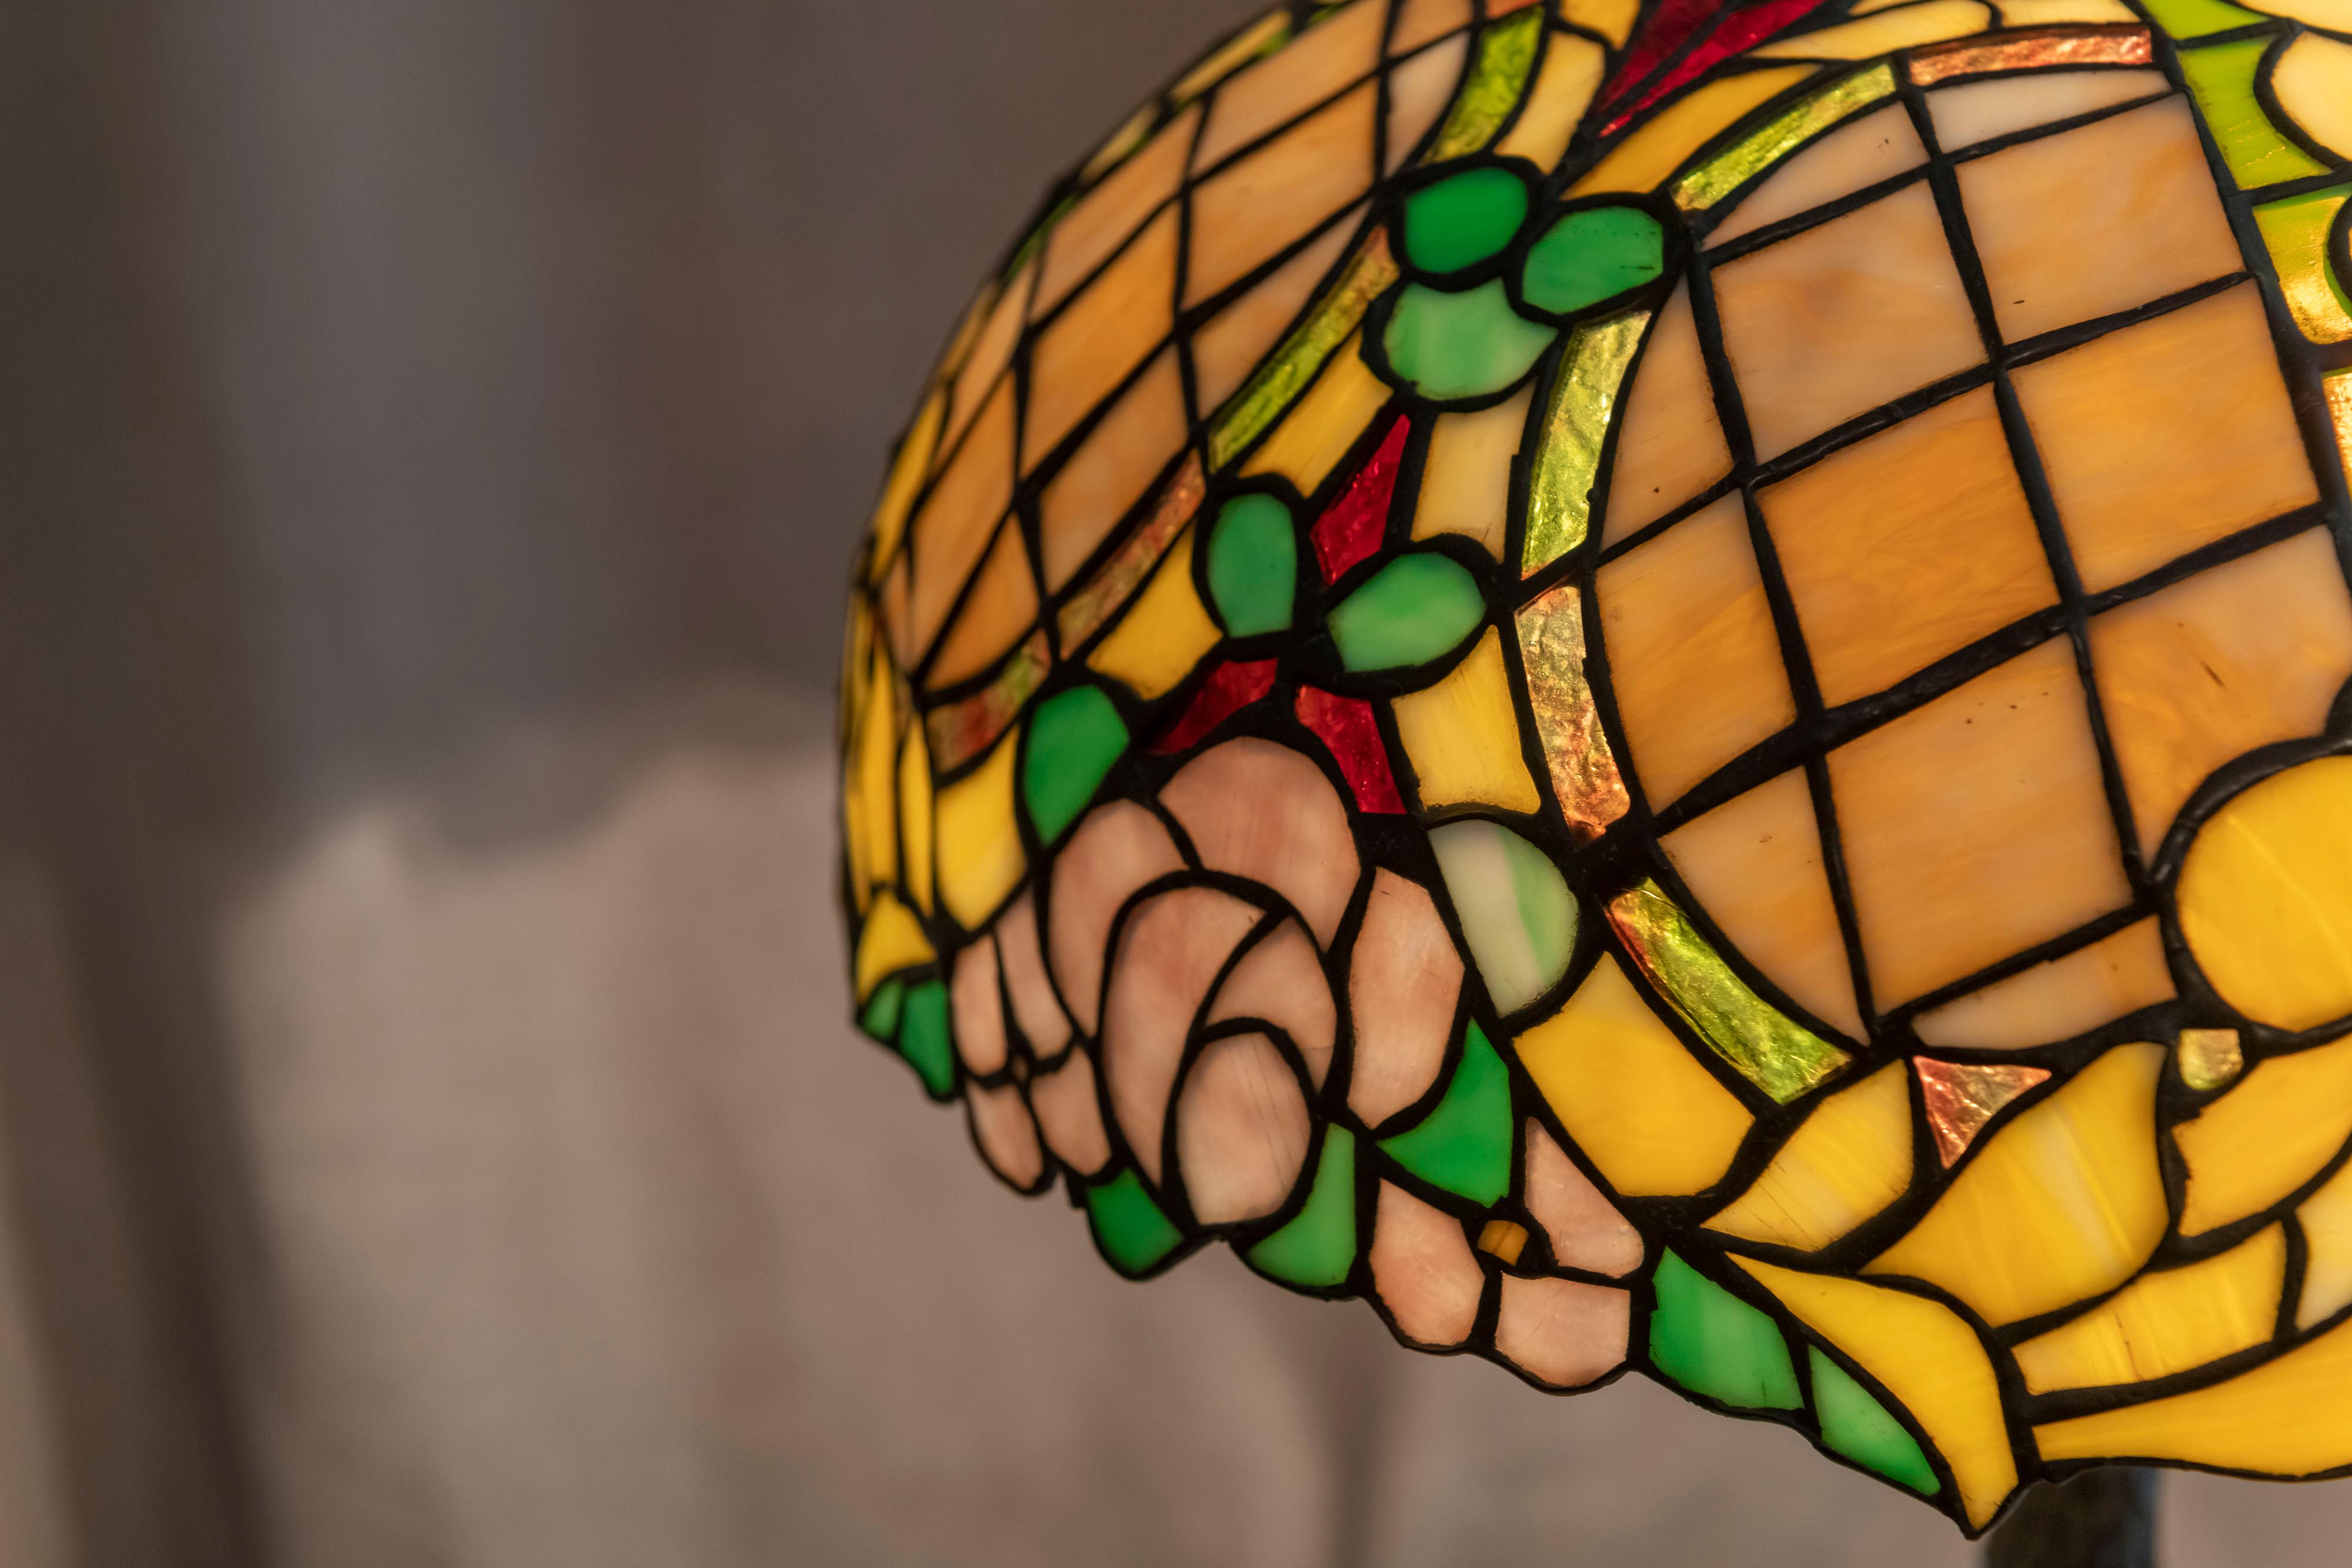 Cette lampe de table en verre plombé à motifs floraux très colorés a été fabriquée par la Chicago Mosaic Lamp Co. La lampe est totalement originale, y compris l'embout, le capuchon thermique, la base et bien sûr l'abat-jour. Bien qu'elle ne soit pas